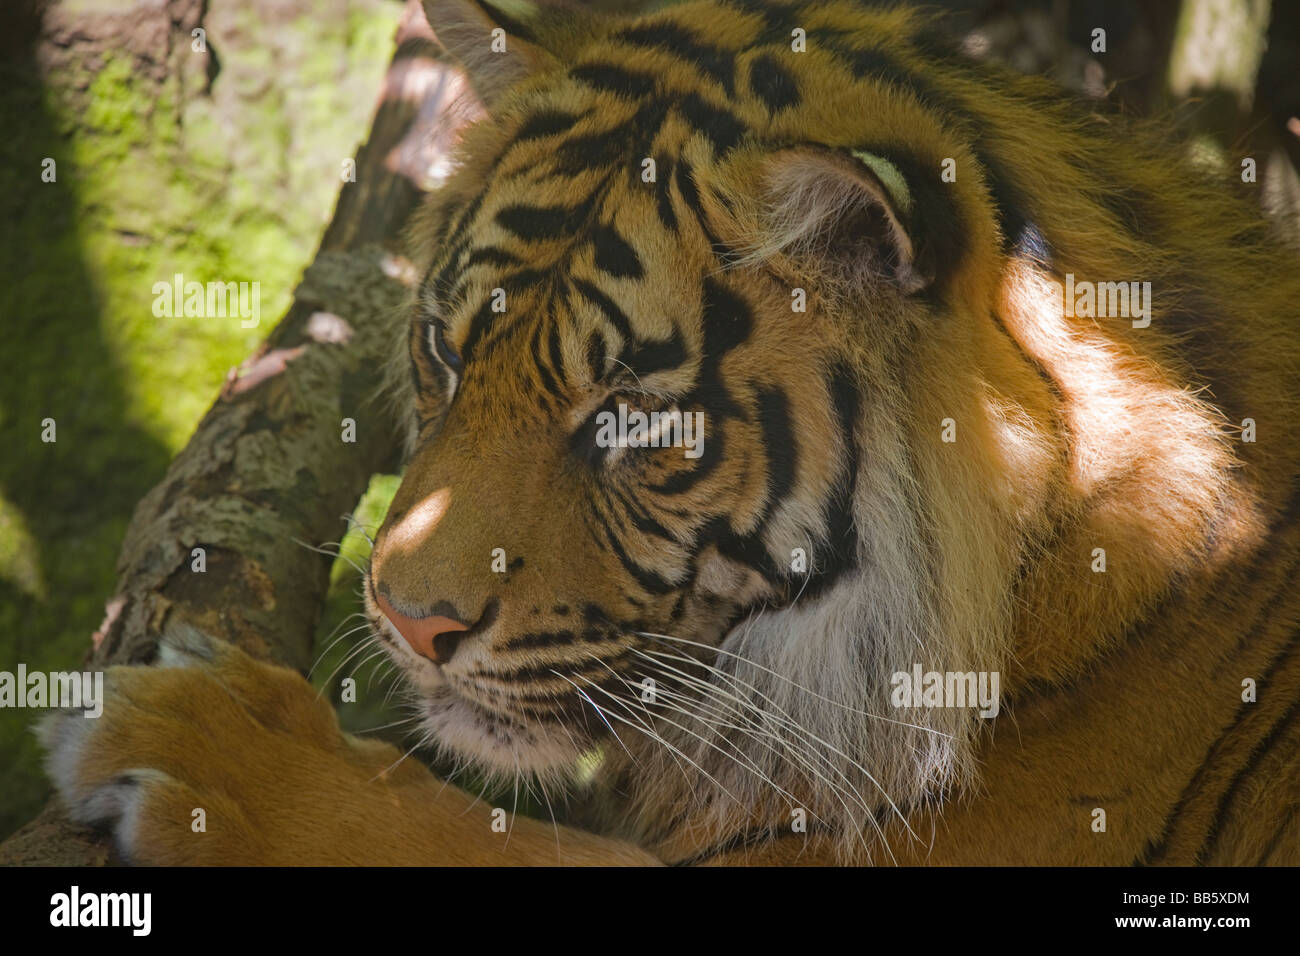 Sumatran Tiger Panthera tigris sumatrae Edinburgh Zoo May 2009 Stock Photo